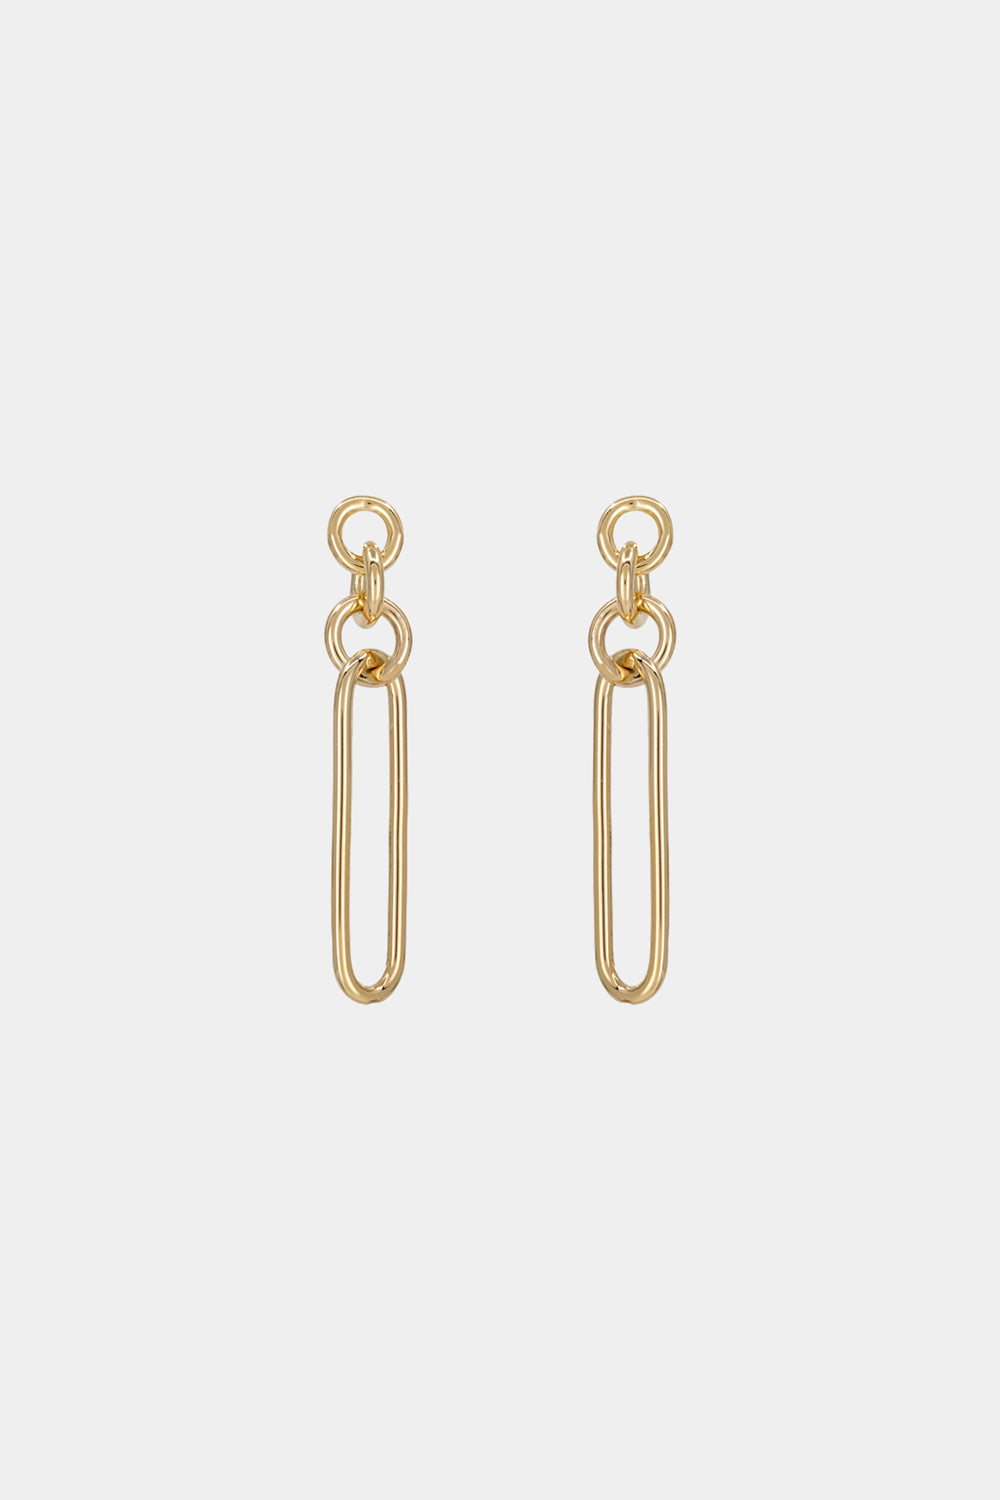 Lennie Earrings | 9K Yellow Gold| Natasha Schweitzer